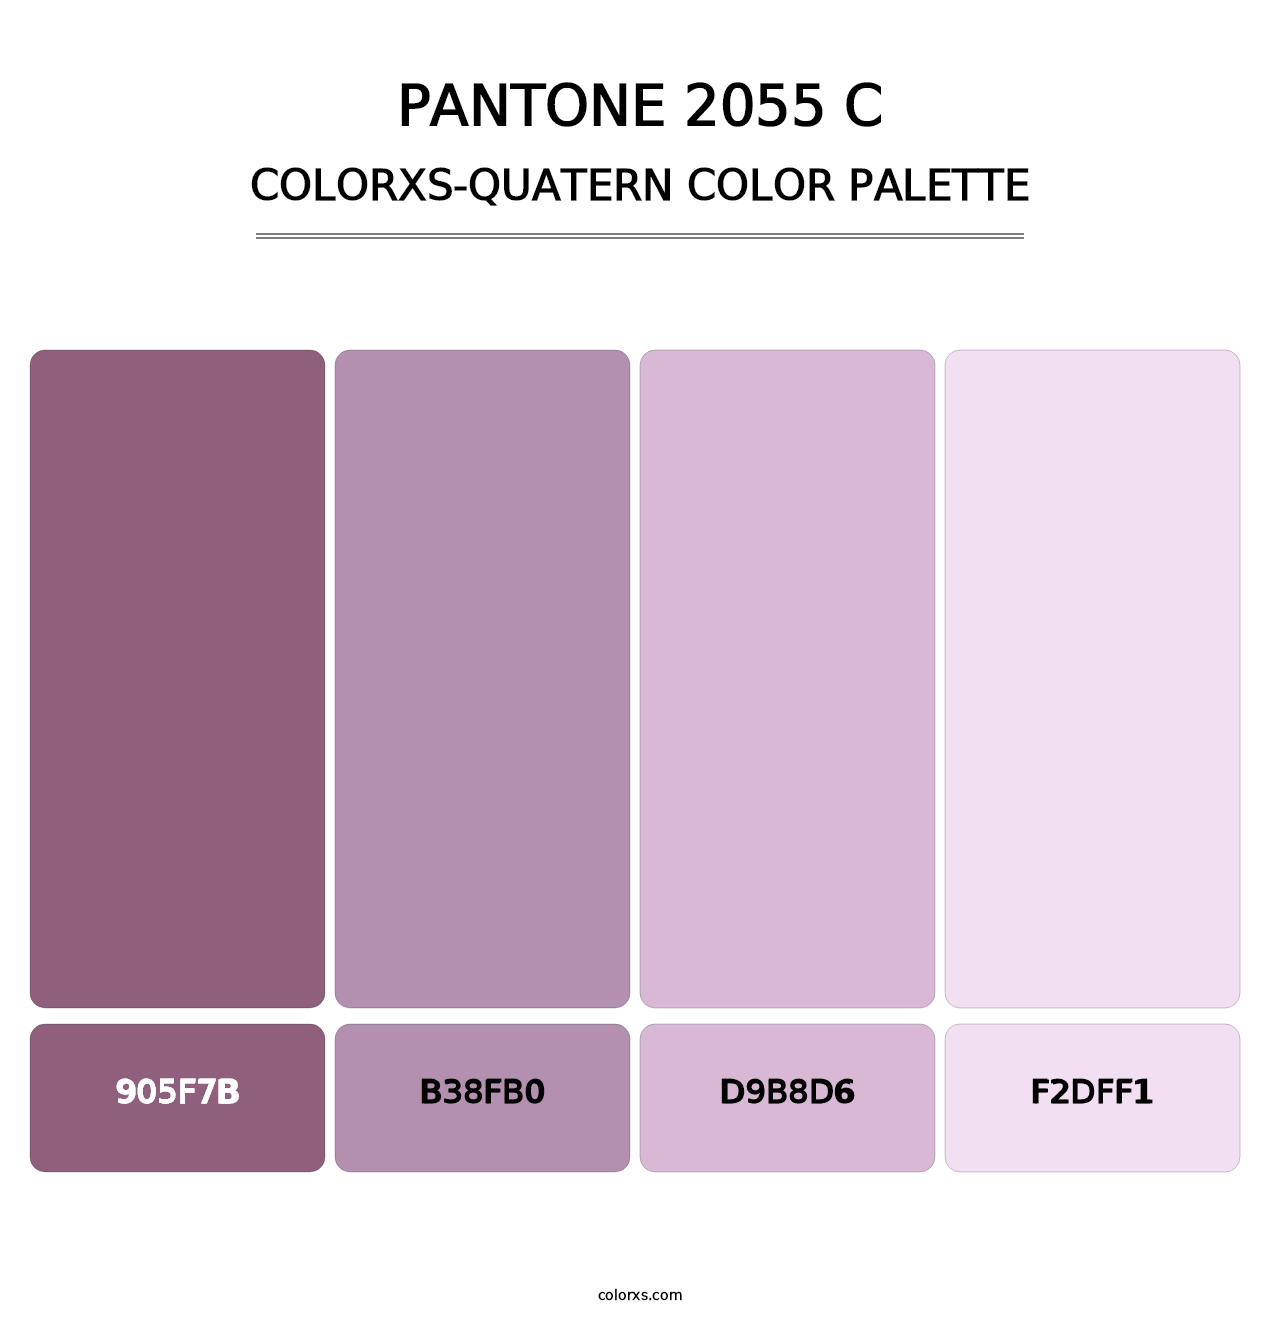 PANTONE 2055 C - Colorxs Quatern Palette